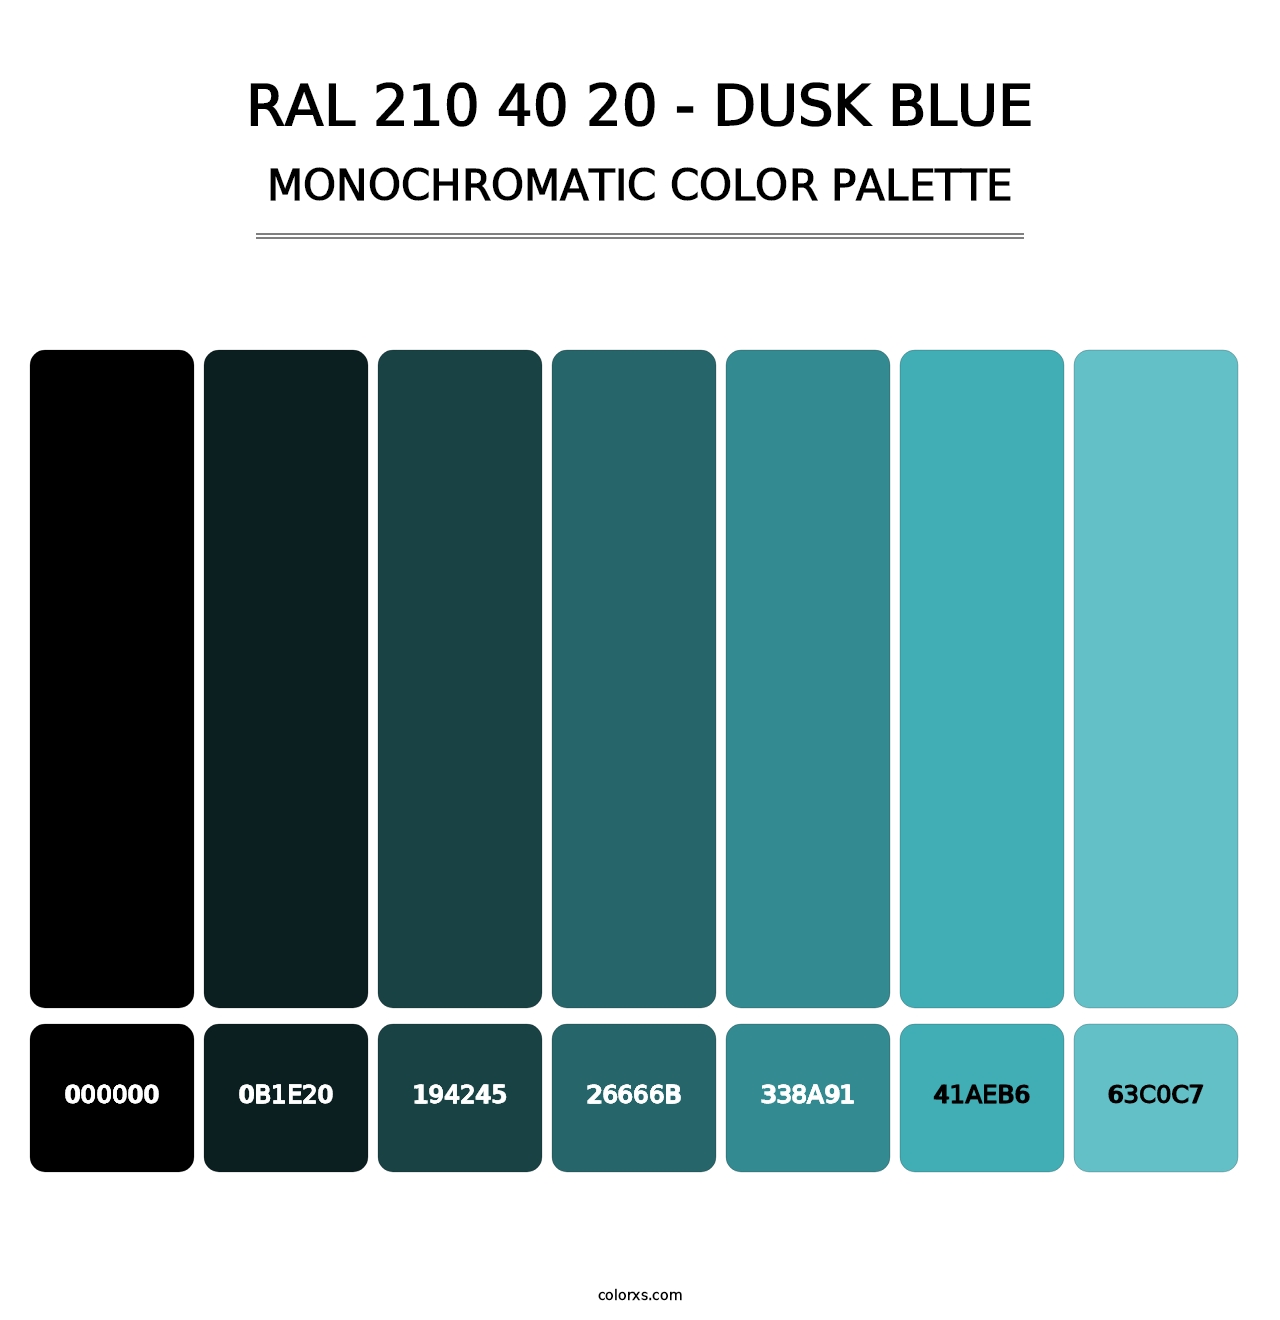 RAL 210 40 20 - Dusk Blue - Monochromatic Color Palette